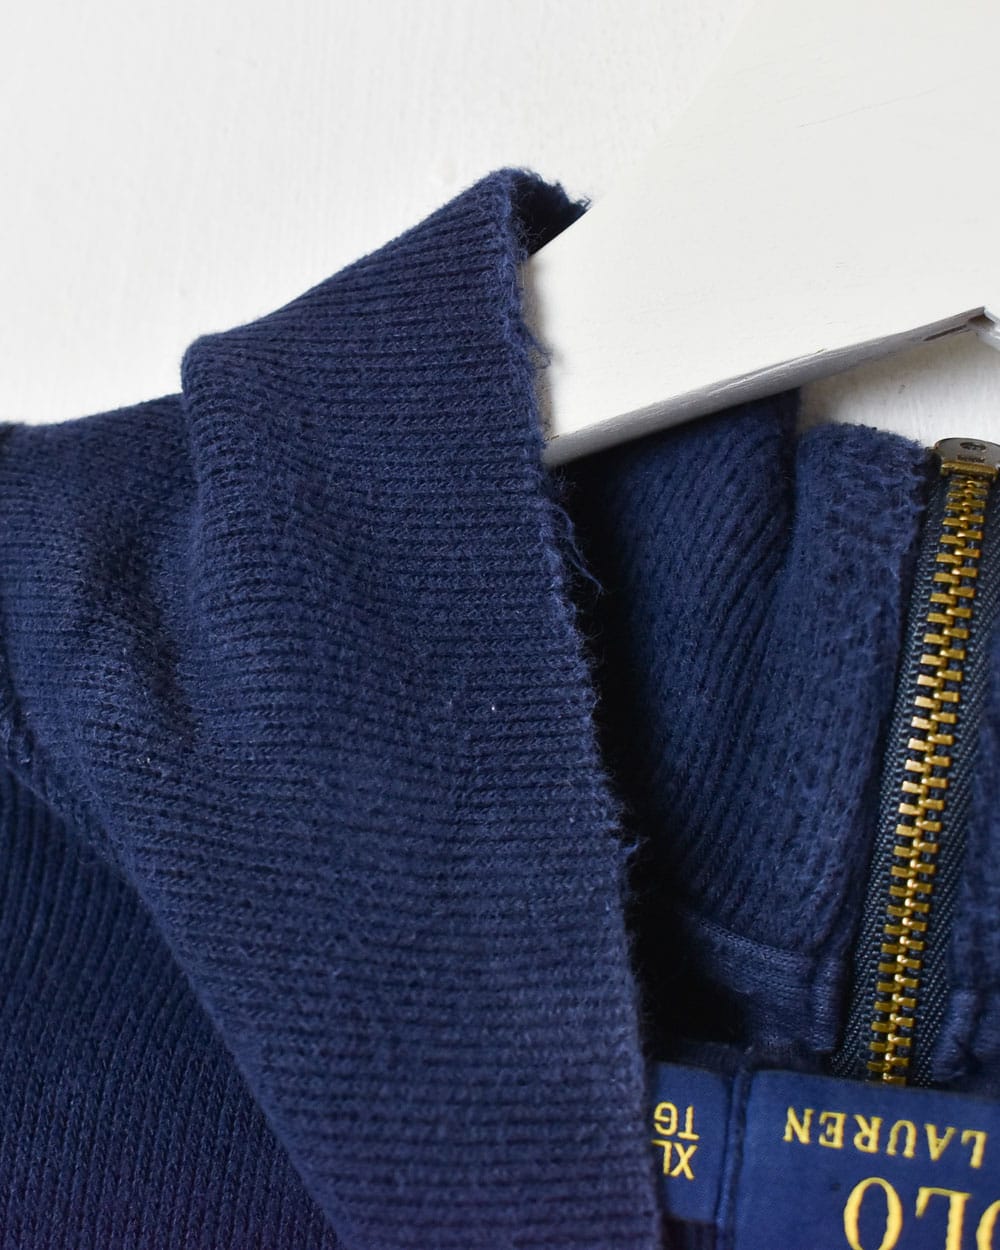 Navy Polo Ralph Lauren 1/4 Zip Sweatshirt - X-Large